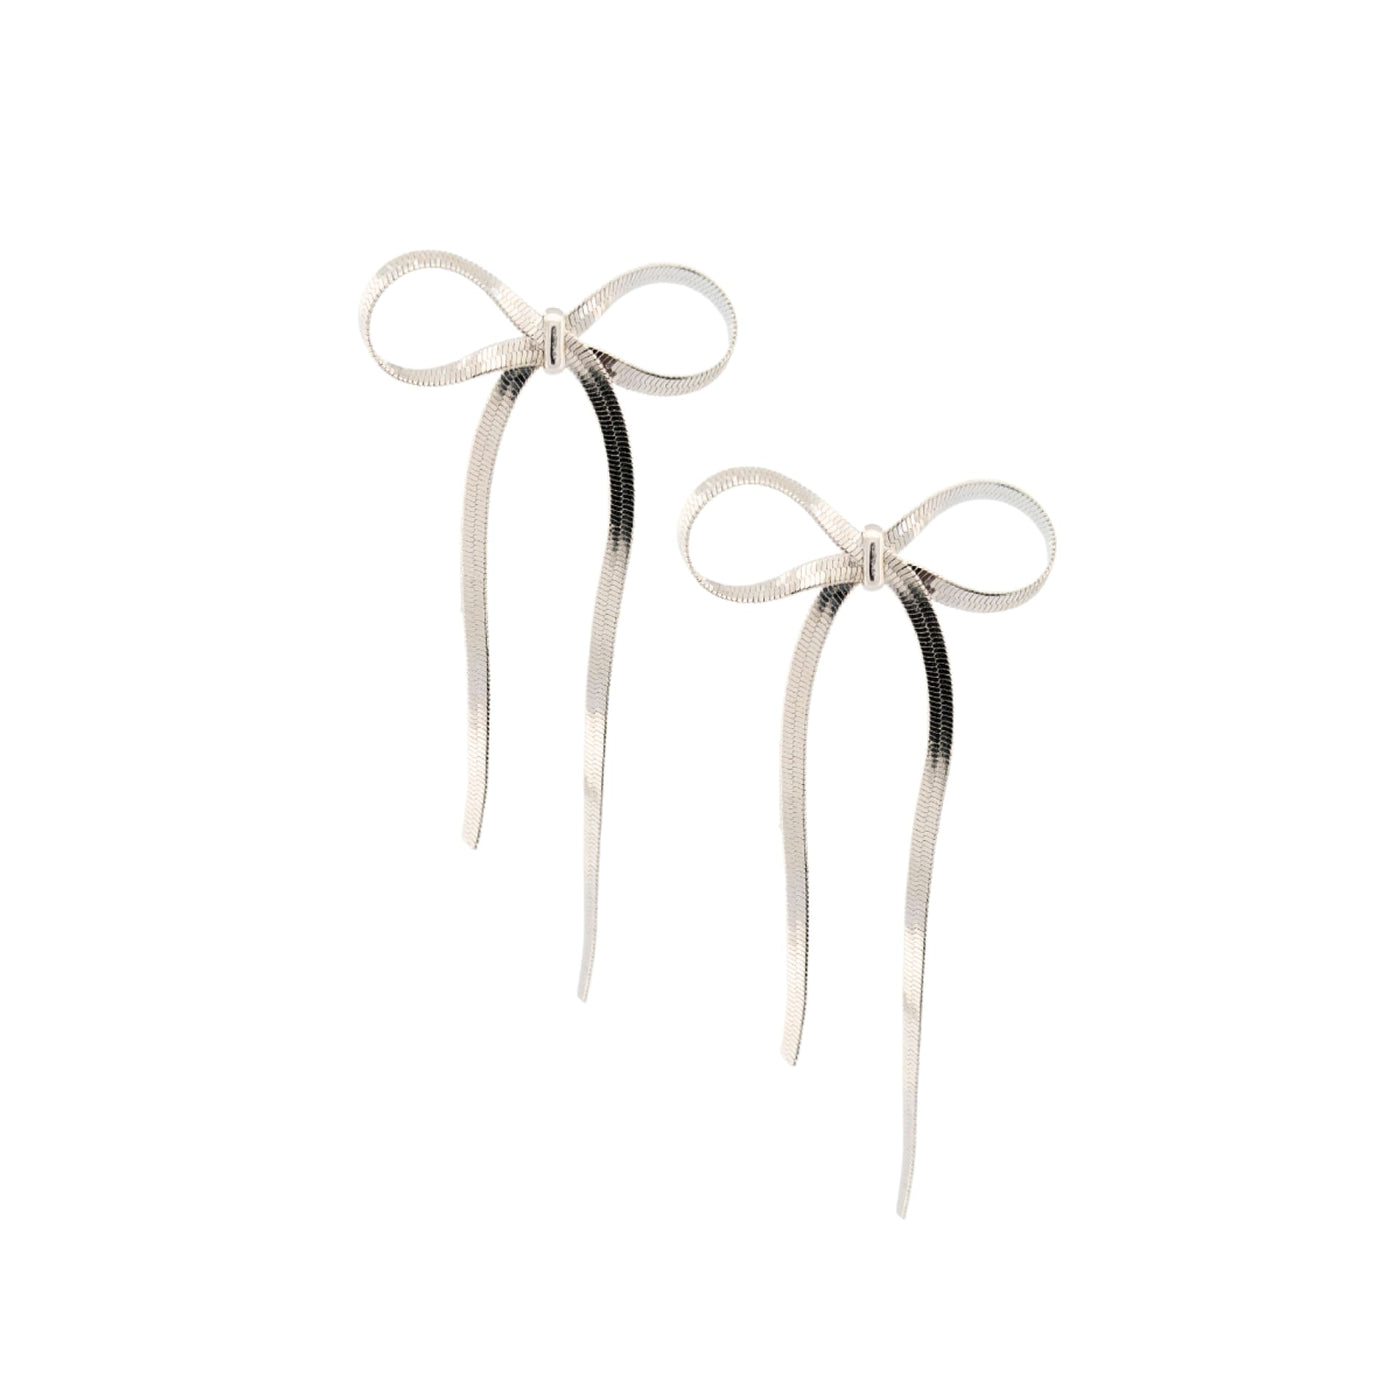 Jace Earrings - Silver - 190 Jewelry